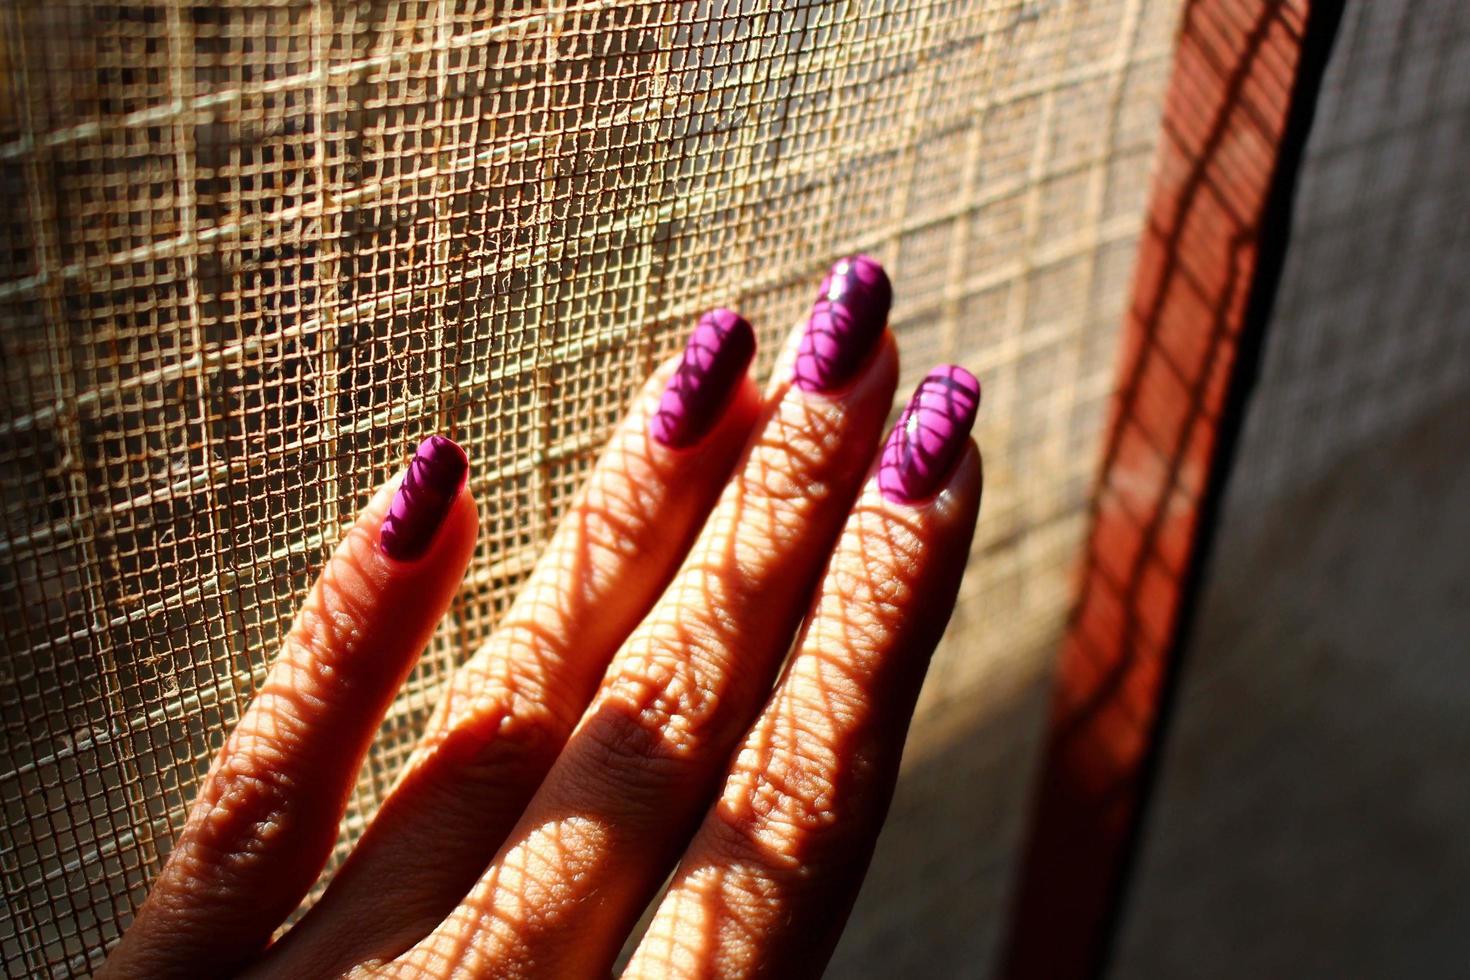 closeup da mão de uma mulher com unhas pintadas à luz do sol foto